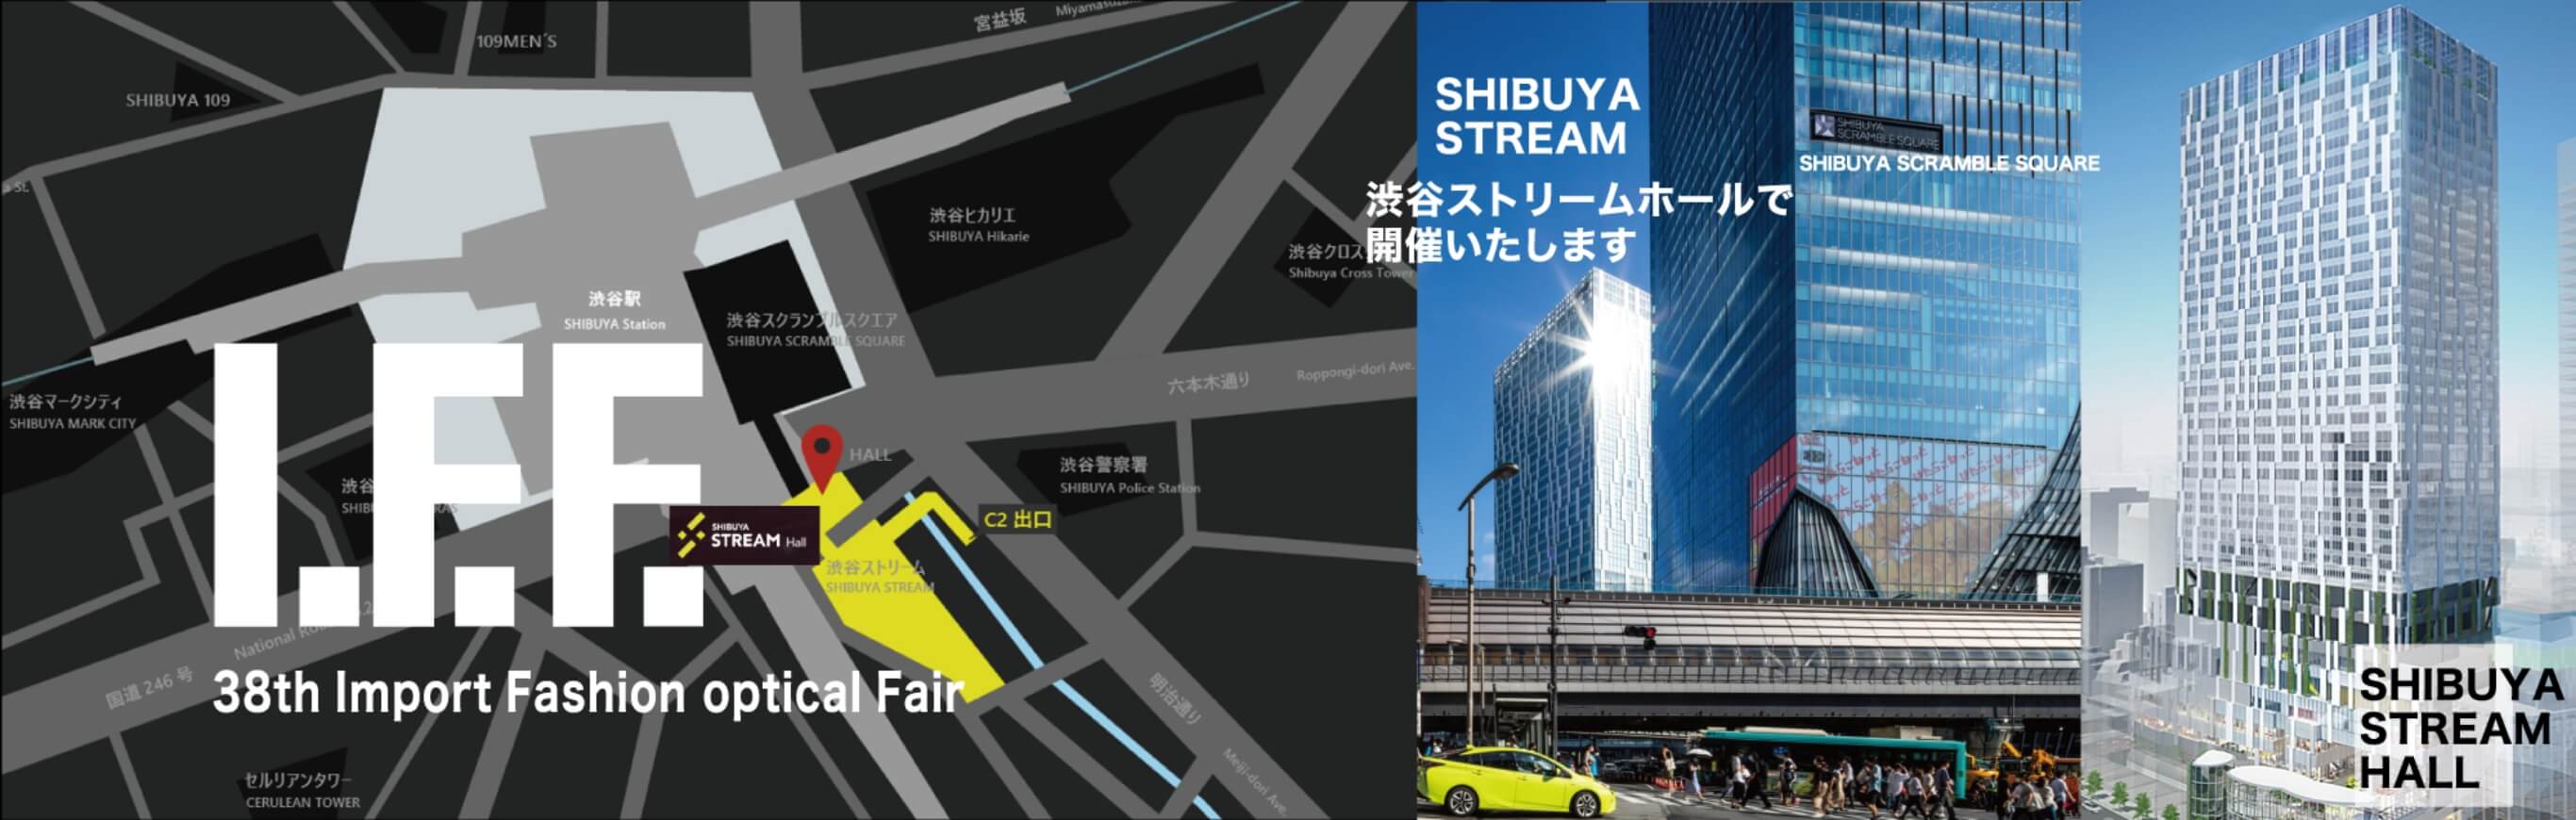 I.F.F. 38th Import Fashion optical Fair SHIBUYA STREAM 渋谷ストリームホールで開催いたします